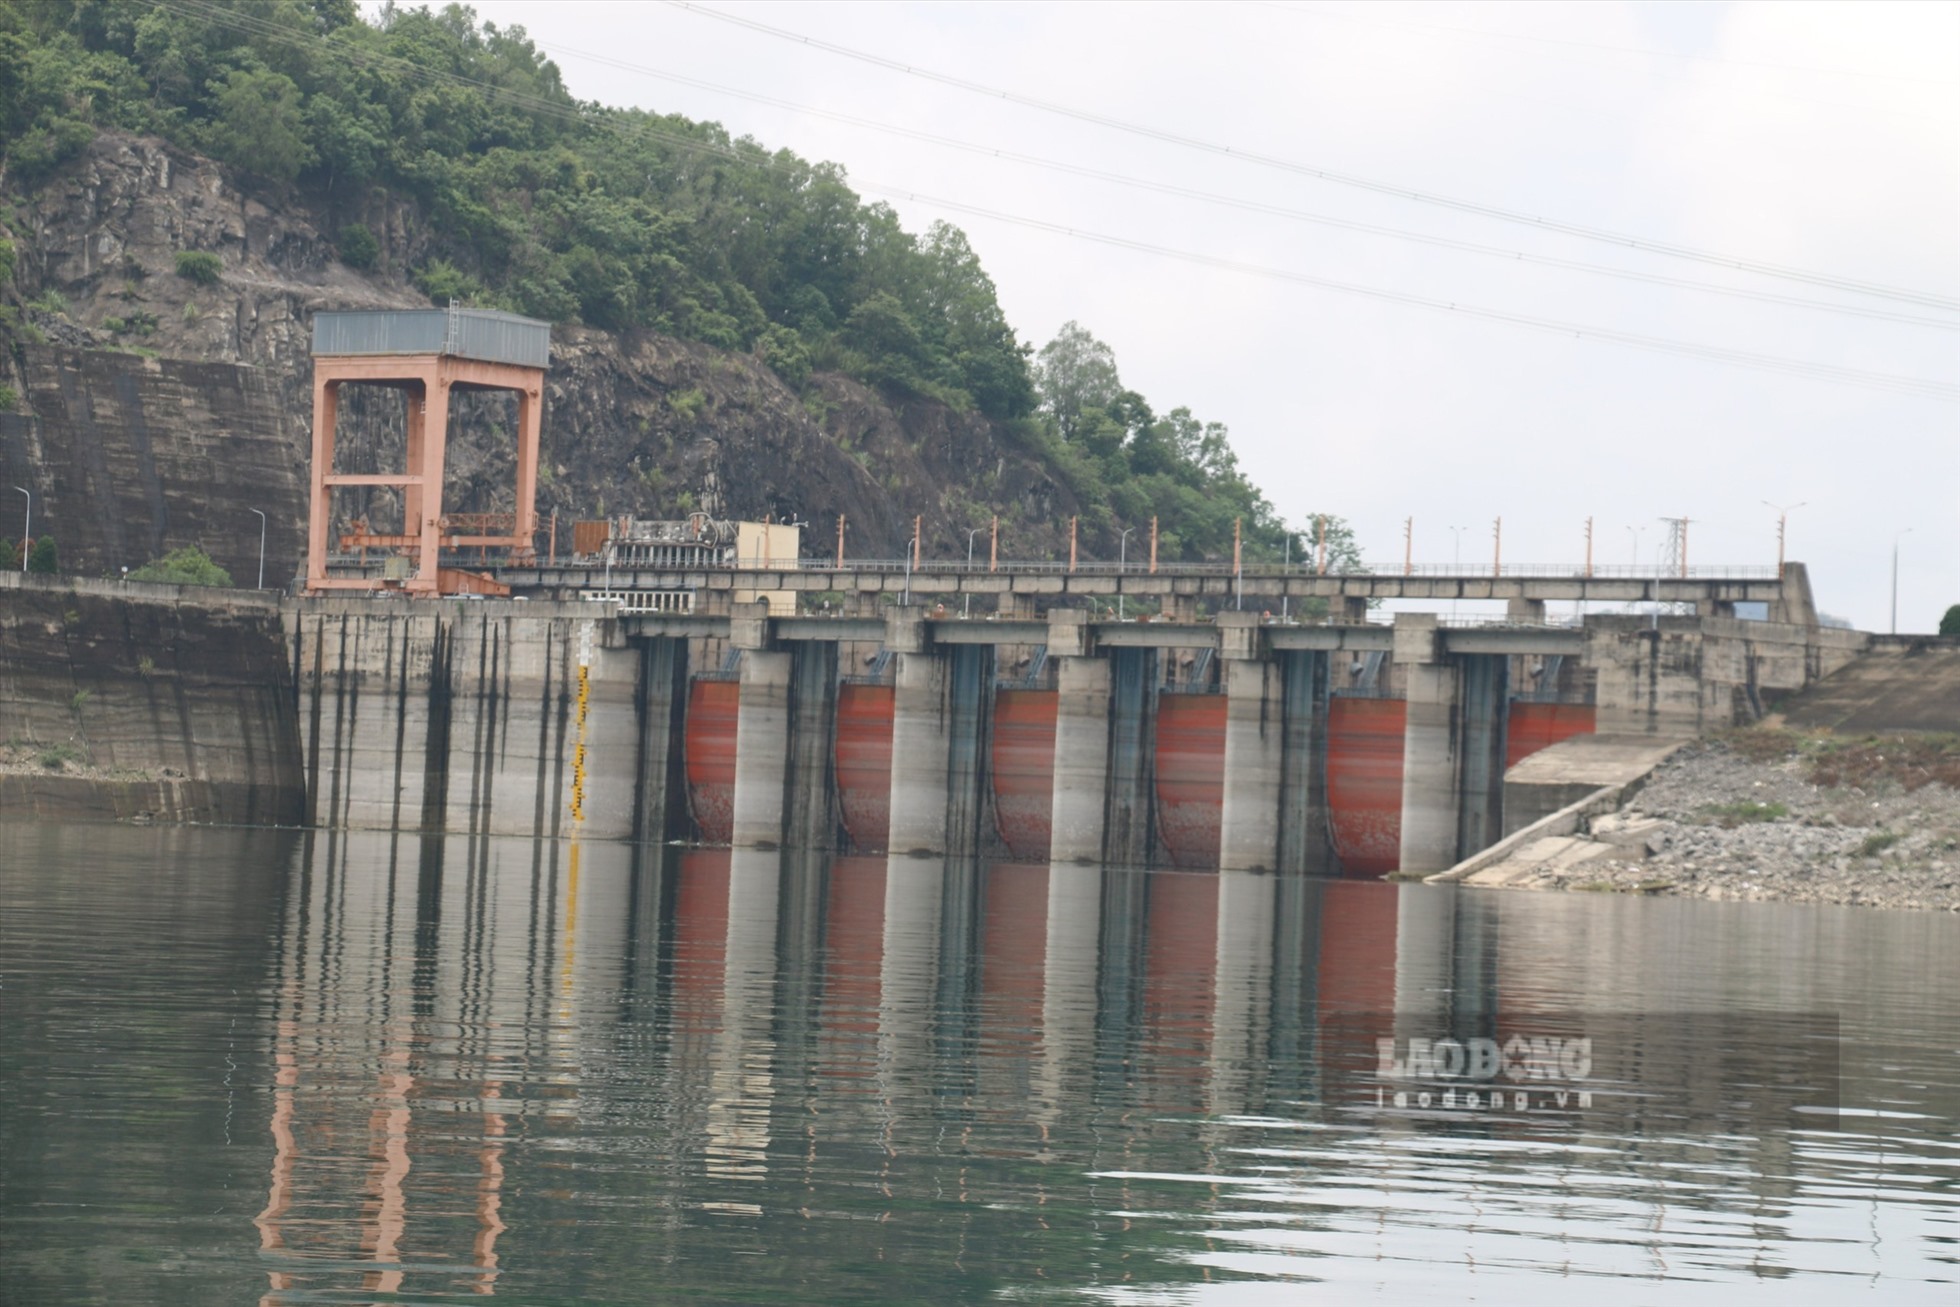 heo ông Phạm Văn Vương, Giám đốc Công ty Thủy điện Hòa Bình, trong sáng 22.6, mực nước hồ là 102.09m, lượng nước về hồ đạt khoảng 300m3/s.